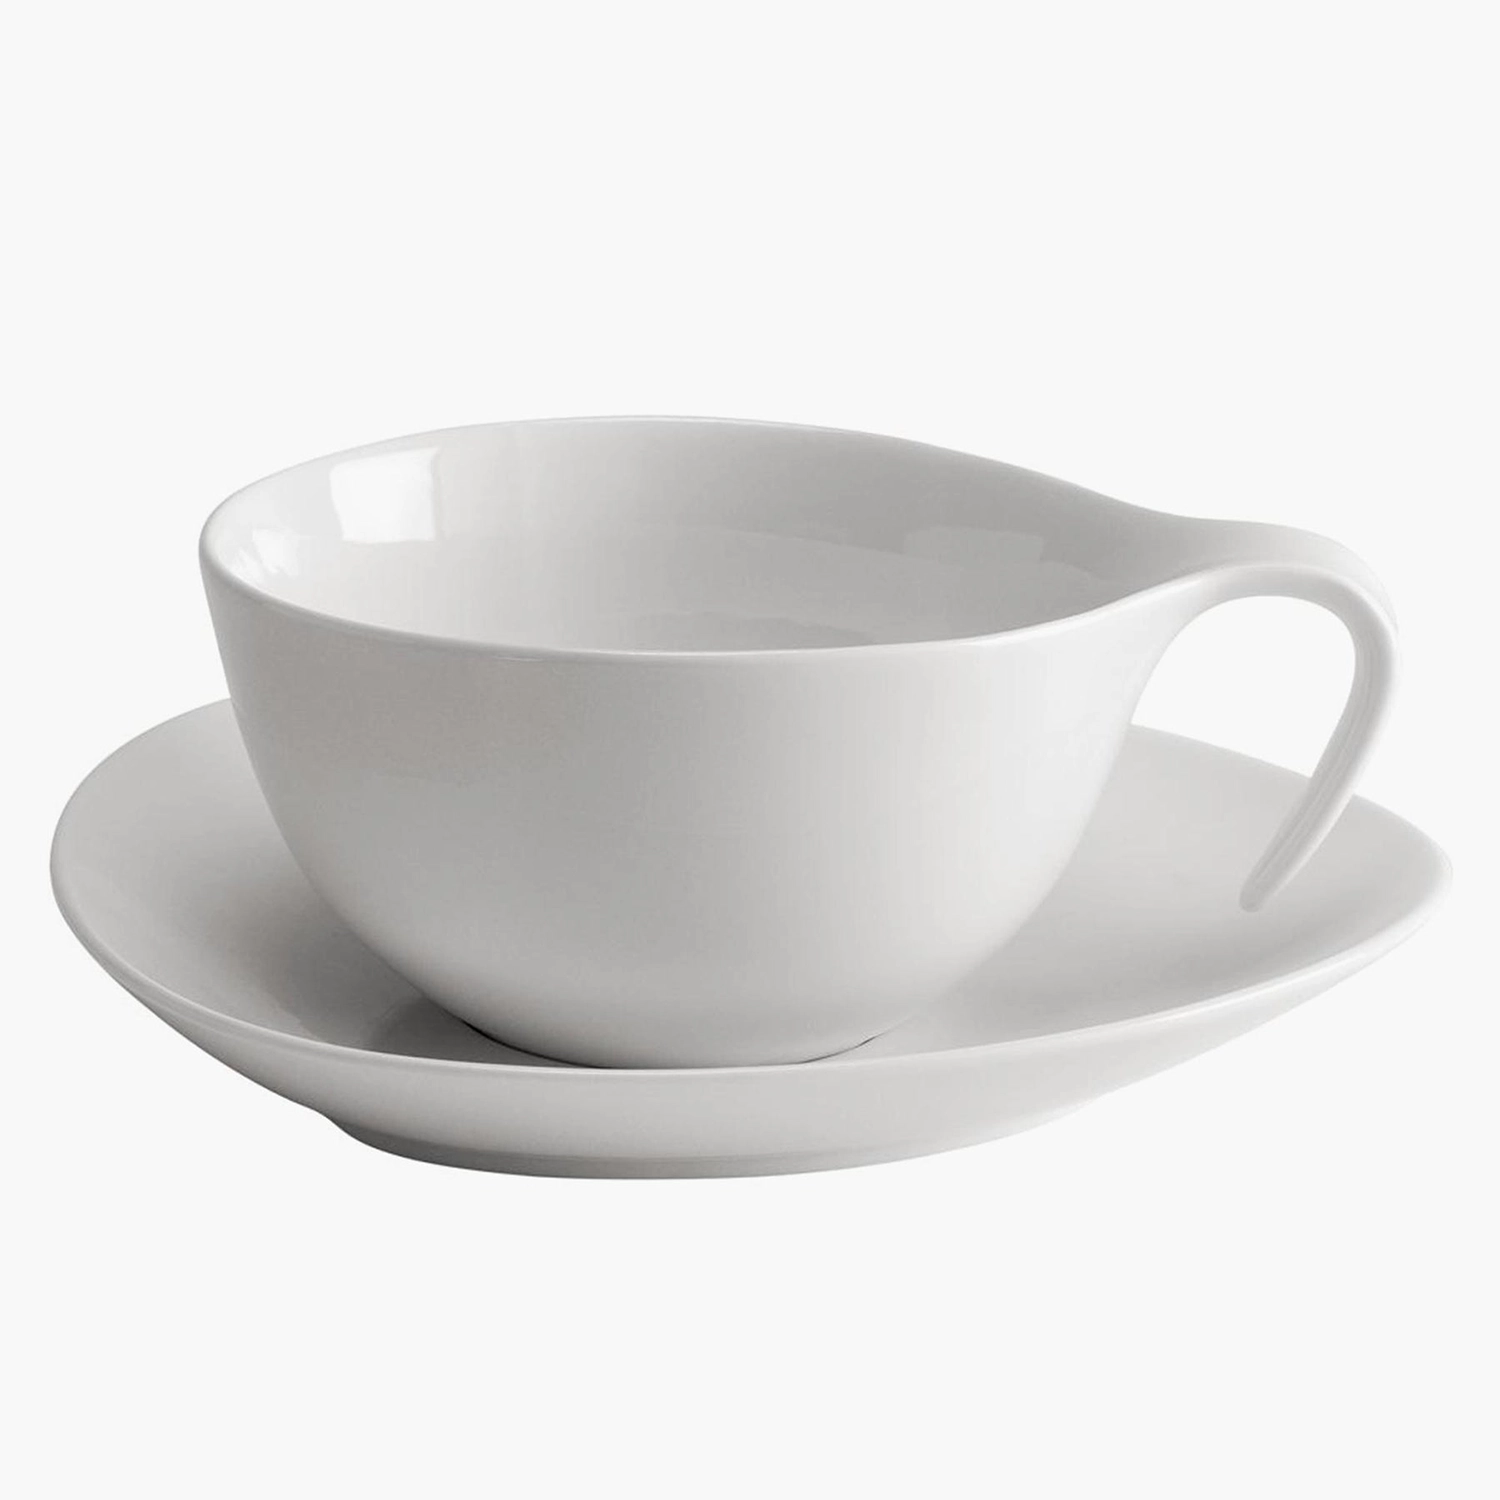 https://www.homethreads.com/files/duka/282624-box-espresso-cup-and-saucer.webp